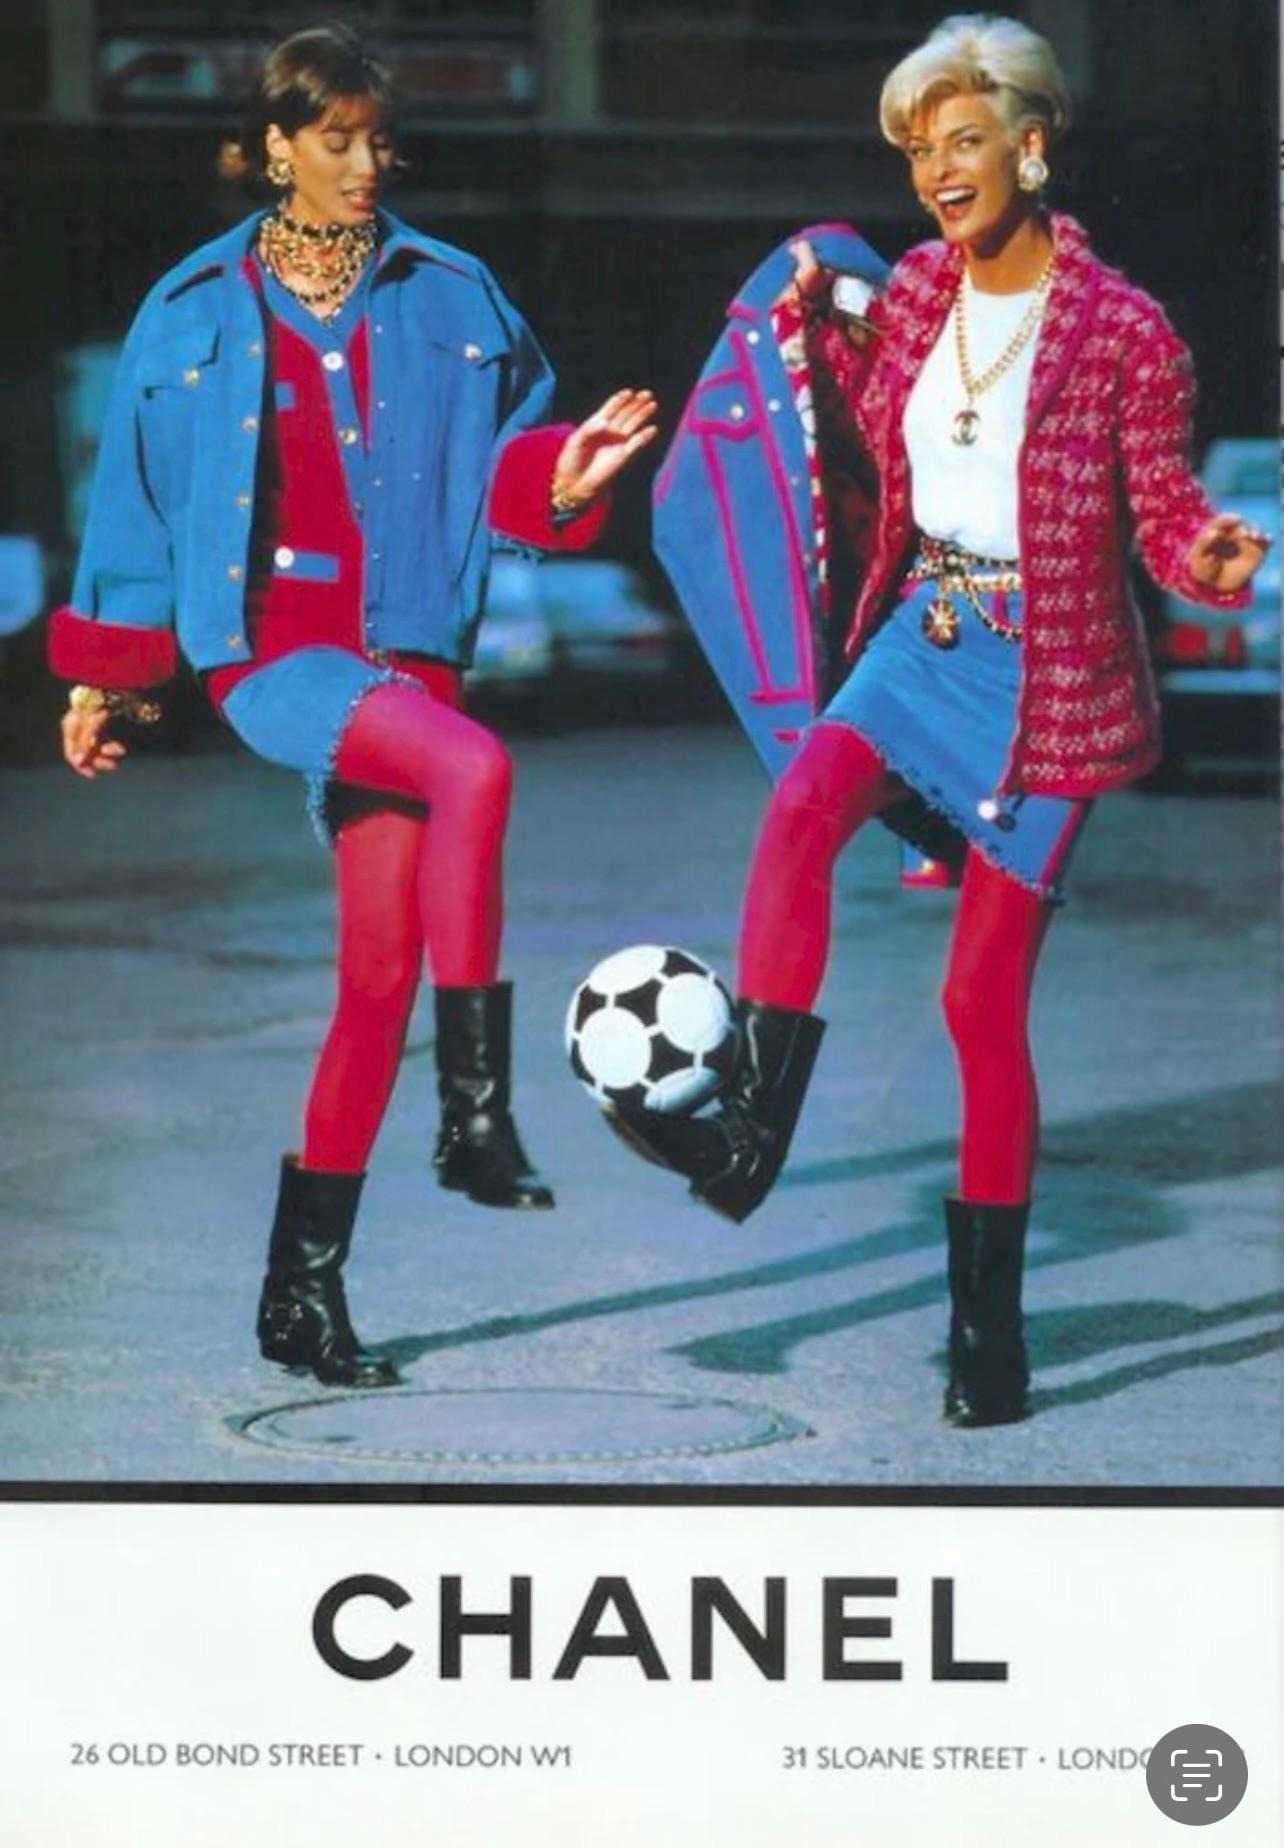 Ein seltener Fund für echte Chanel-Kennerinnen!
Tweed & Denim Jacke und Rock Anzug Set von Runway of 1991 Fall Collection'S!
Der Preis in anderen Quellen beginnt bei 6.000€ (!)
Wurde nie getragen - in diesem Zustand unmöglich zu finden!